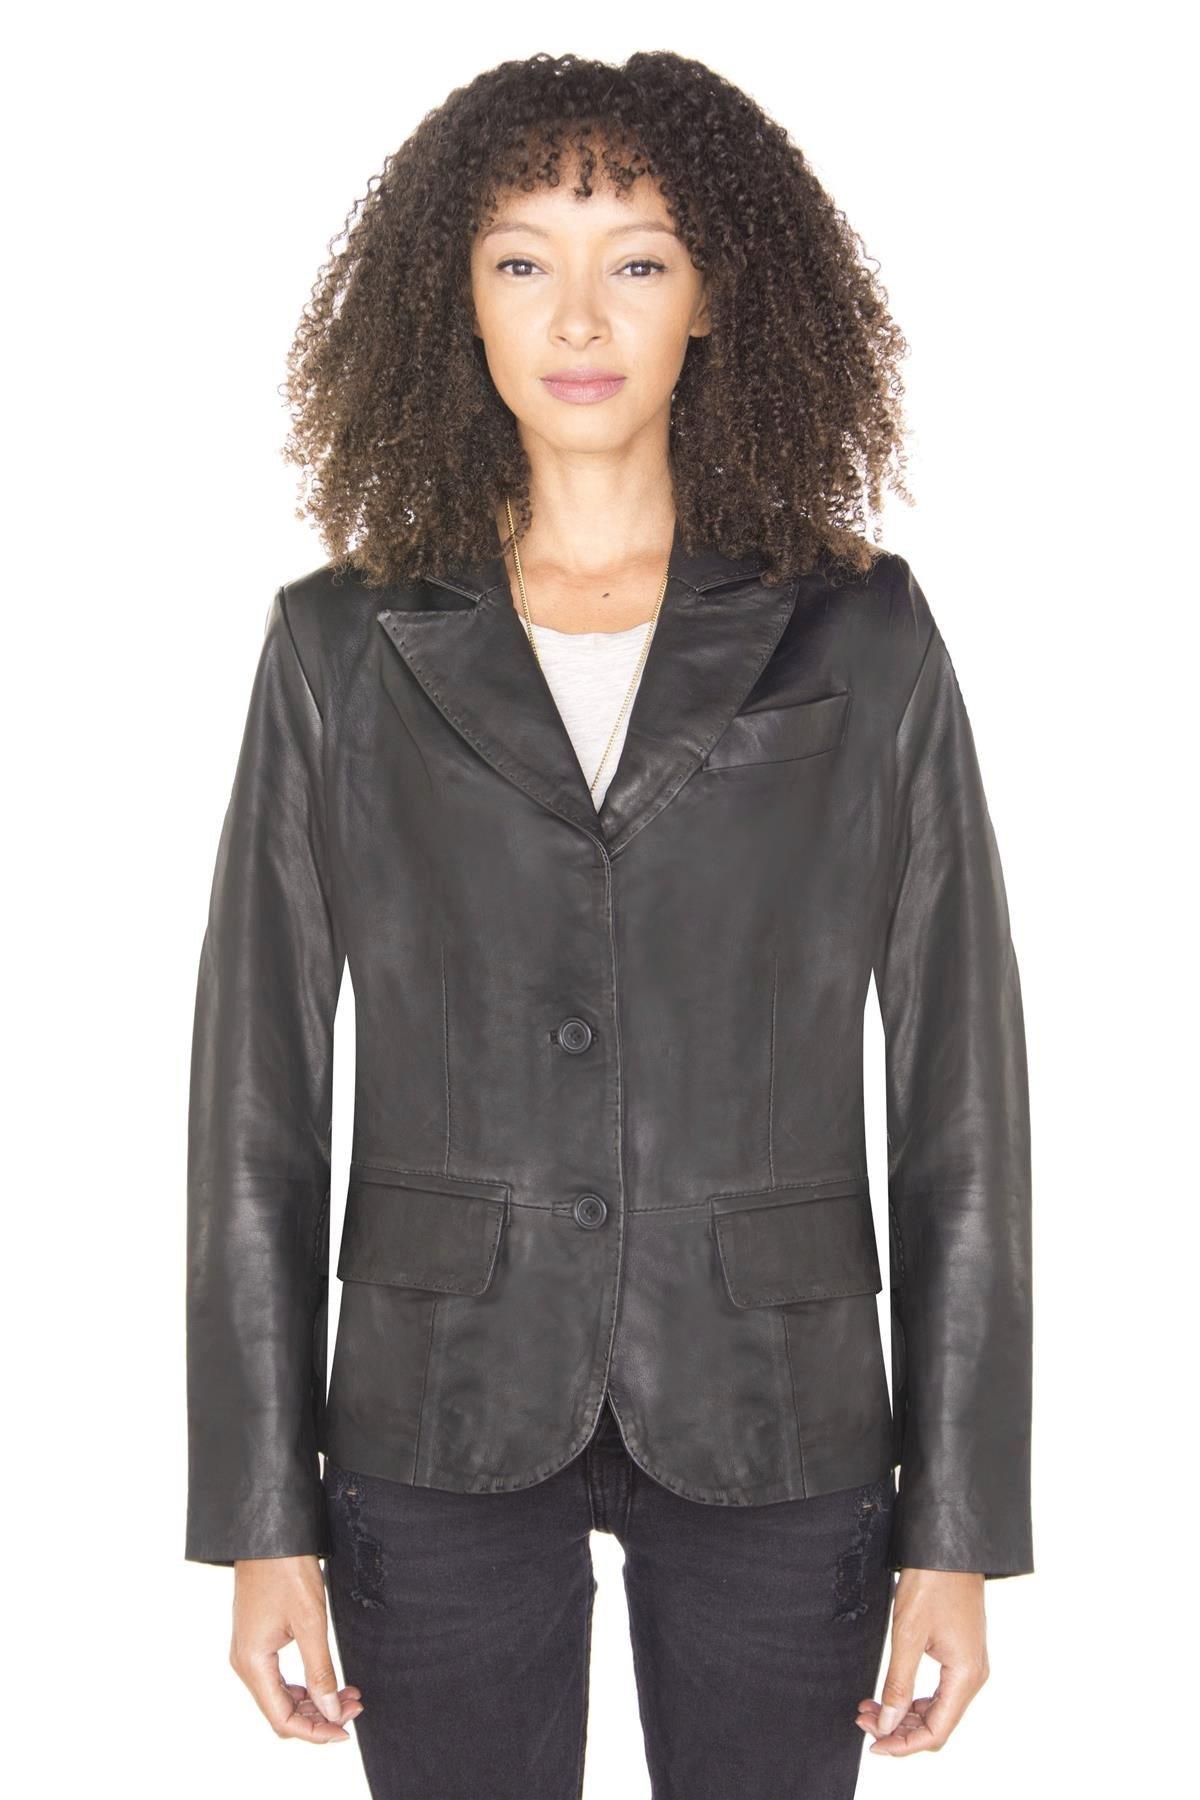 Кожаный пиджак-Seregno Infinity Leather, черный